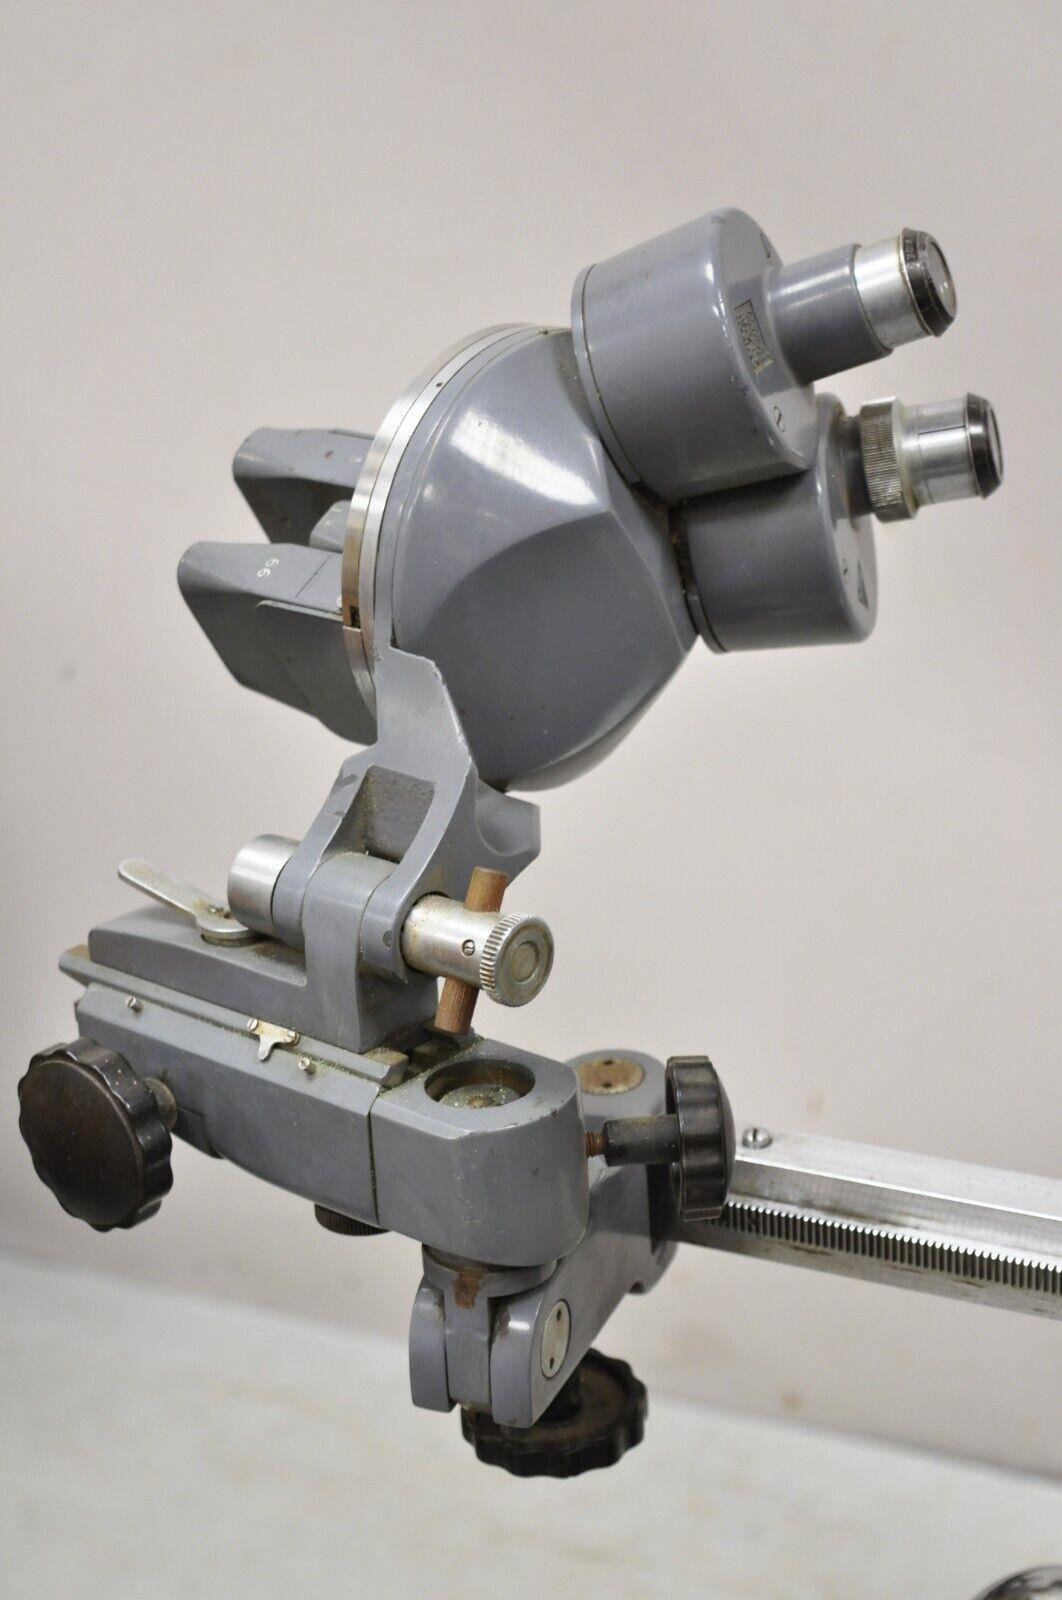 Vintage Bausch & Lomb Optical XD 7489 Medical Supply Test. L'article présente un dispositif optique Bausch & Lomb. Nous ne savons pas exactement à quoi il sert ni ce qu'il est censé faire. Environ 85 livres. Circa  Fin du 20e siècle. Dimensions :